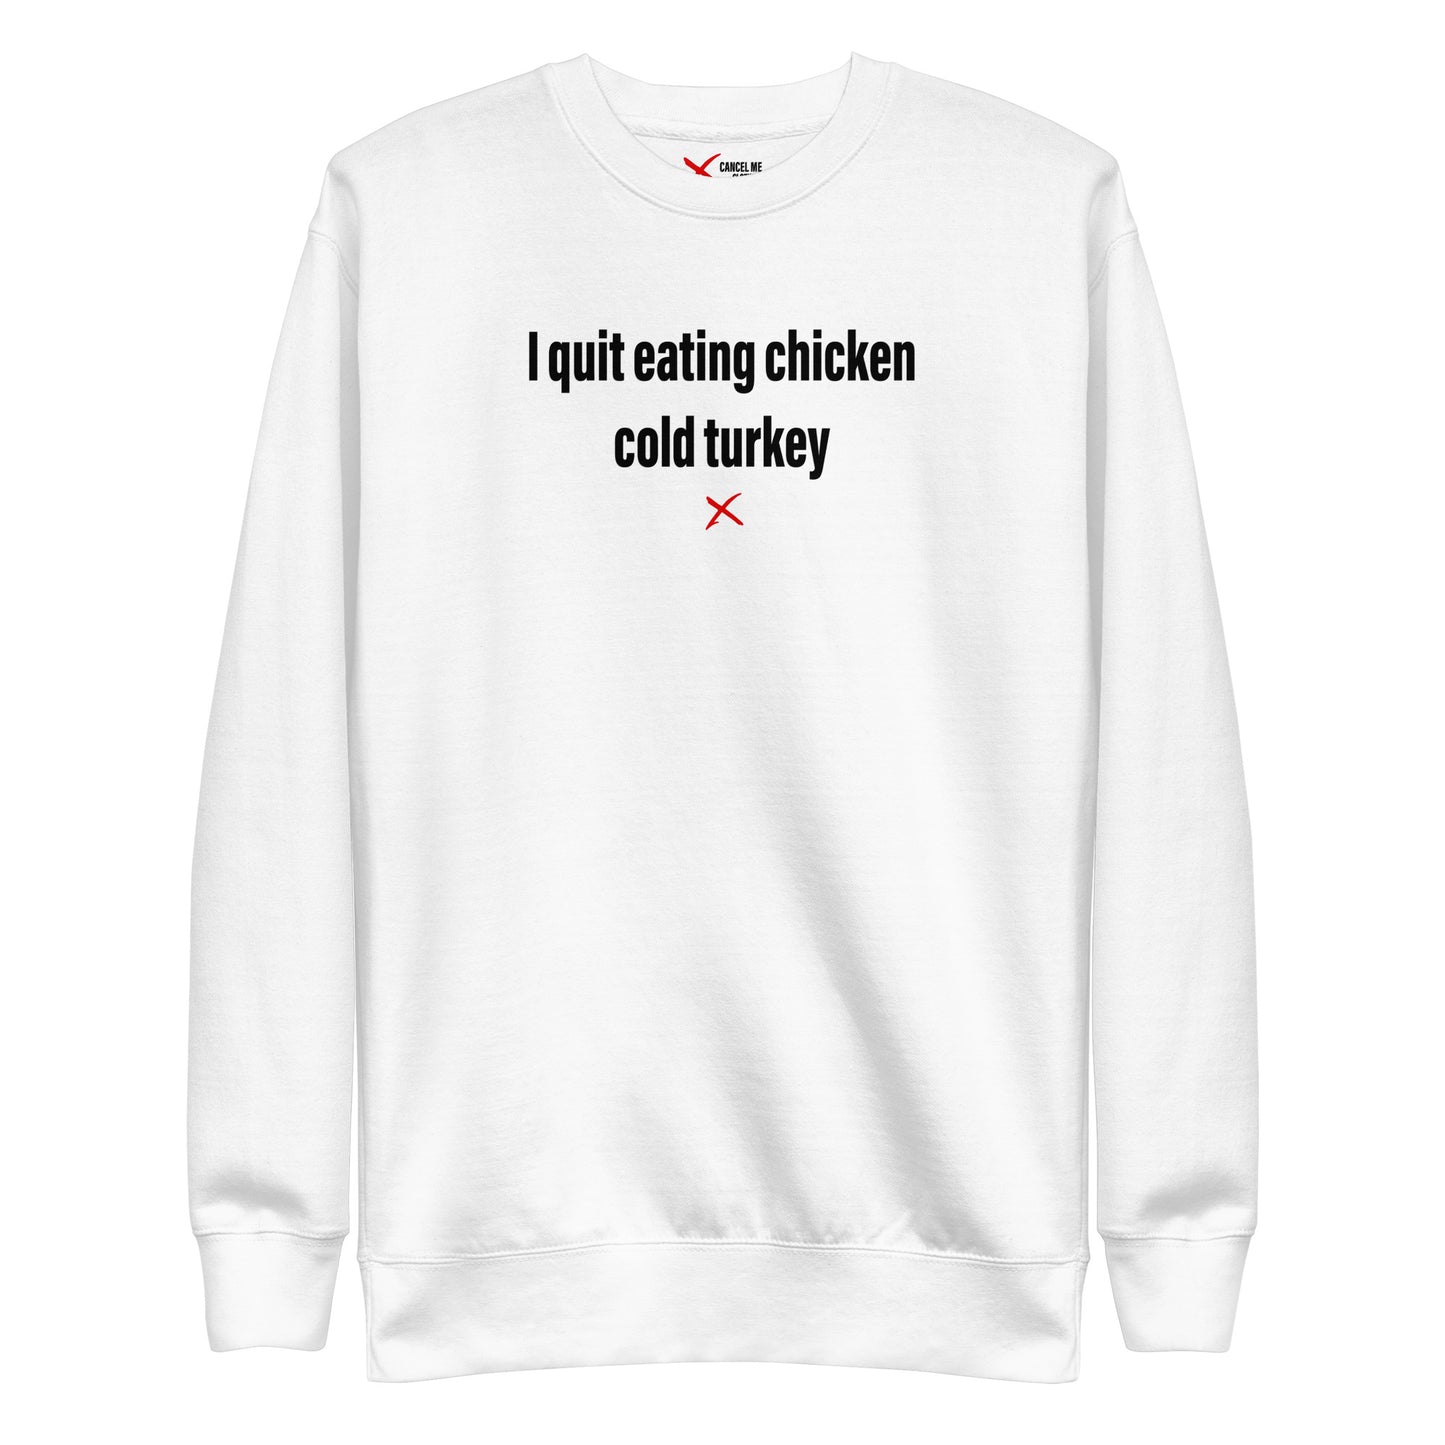 I quit eating chicken cold turkey - Sweatshirt